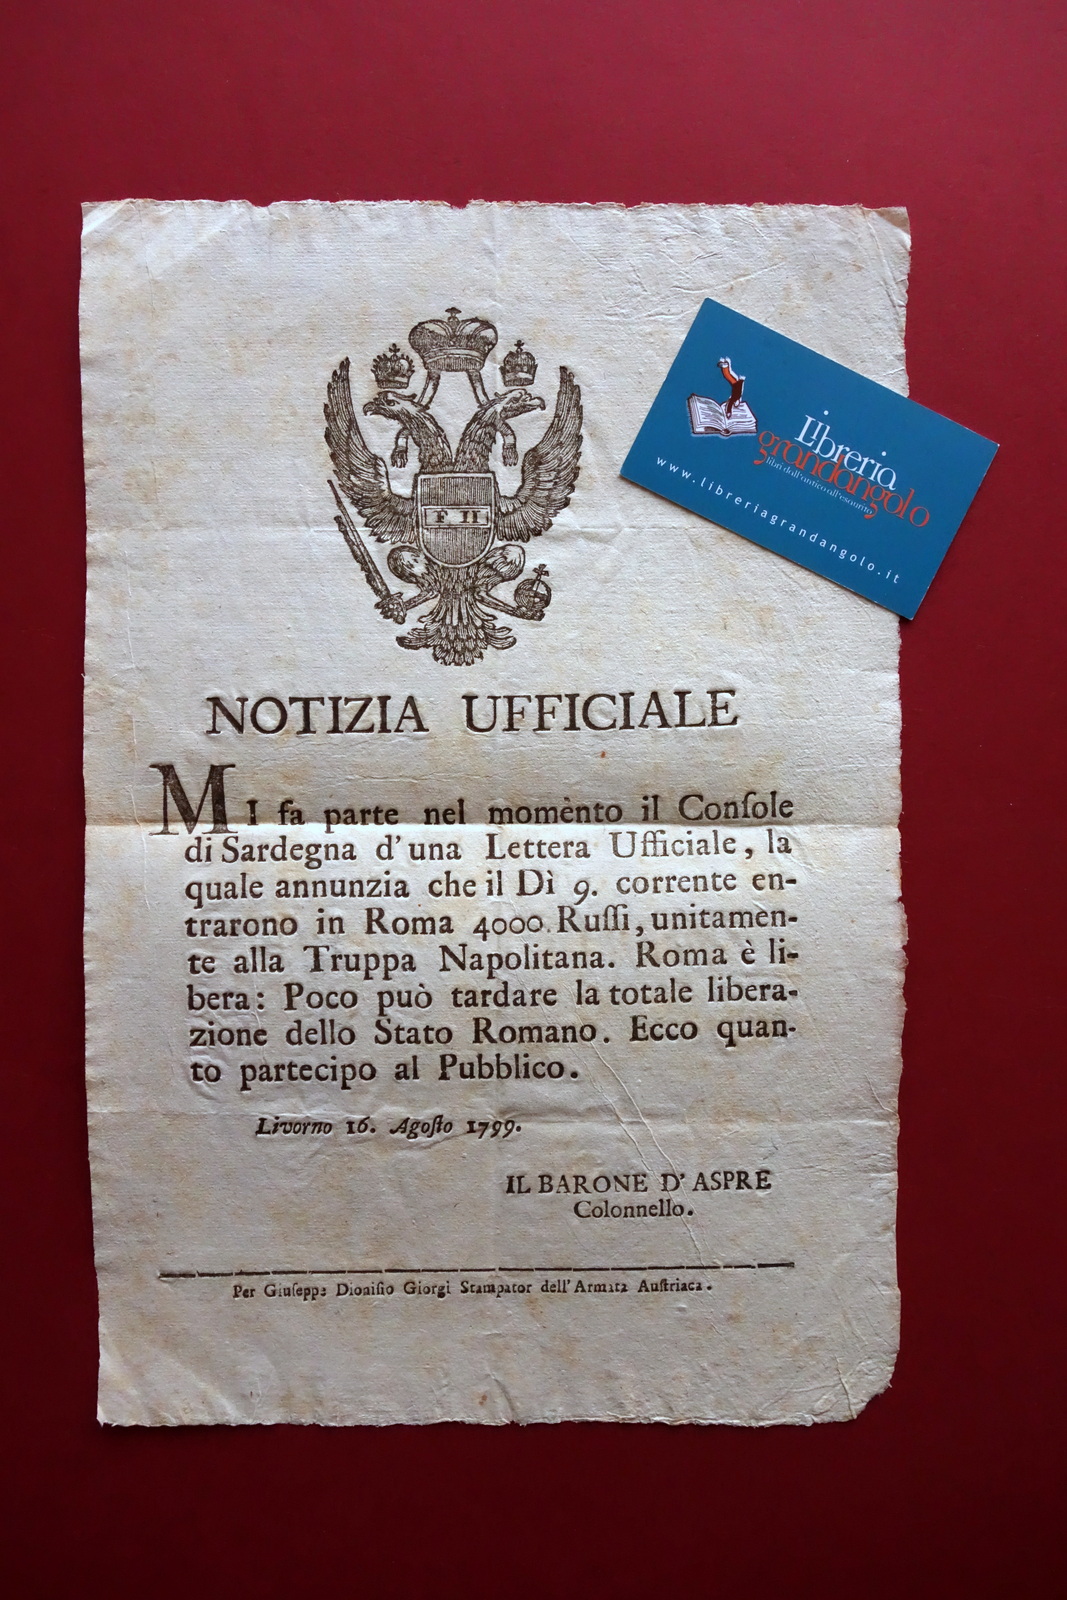 Grida Notizia Ufficiale Roma Liberata da Russi e Napoletani Giorgi Livorno 1799